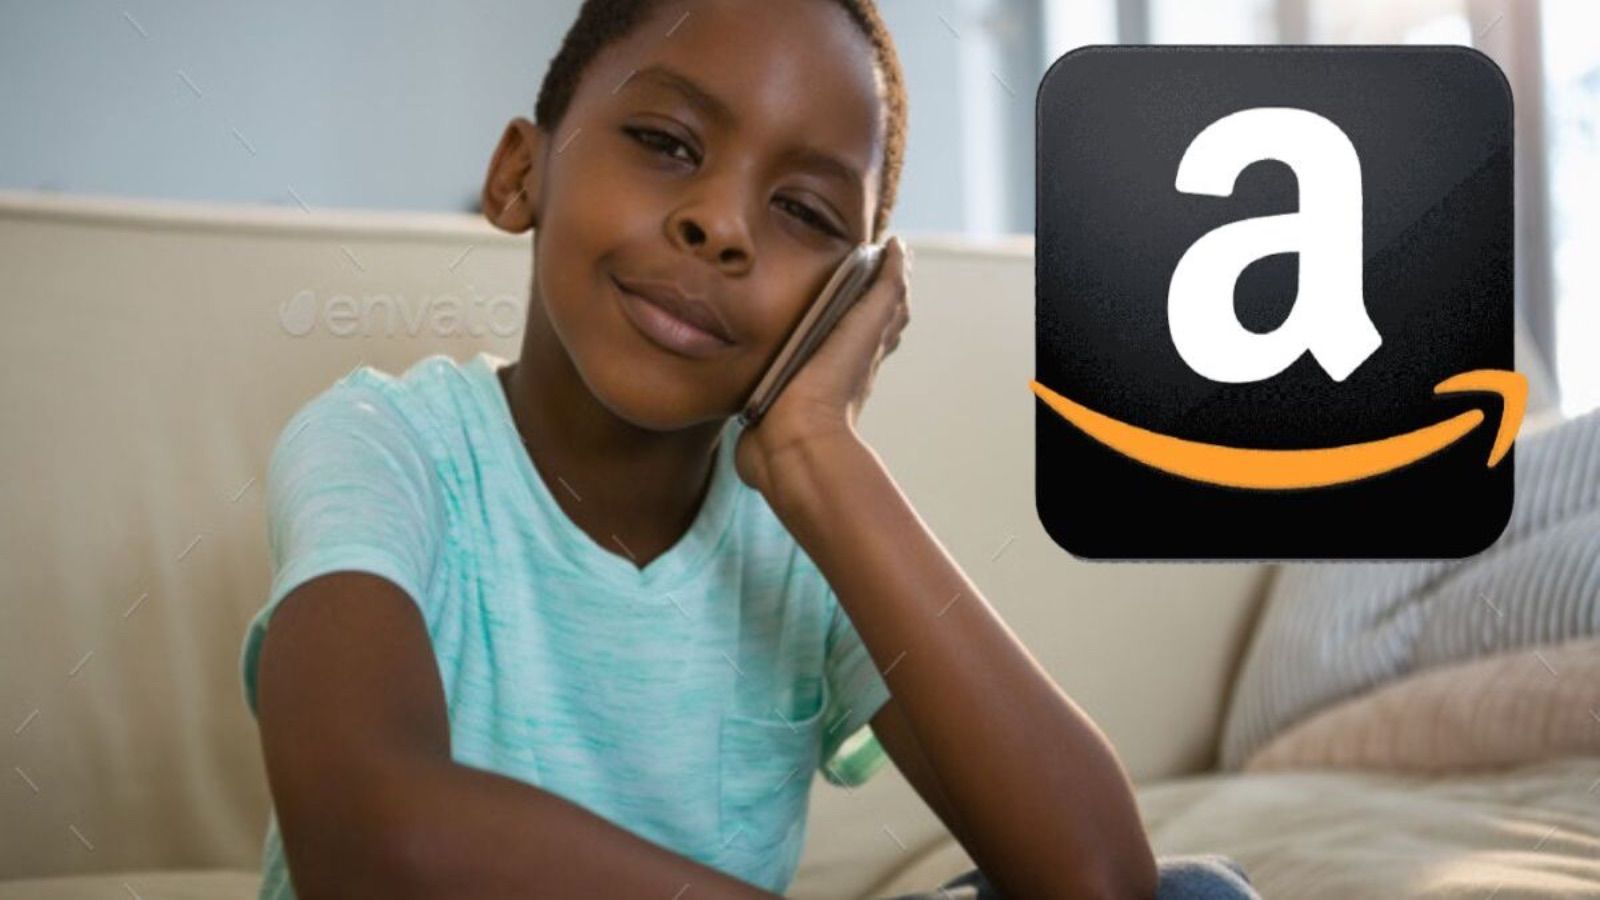 Amazon DISTRUGGE Unieuro con offerte al 90% di sconto